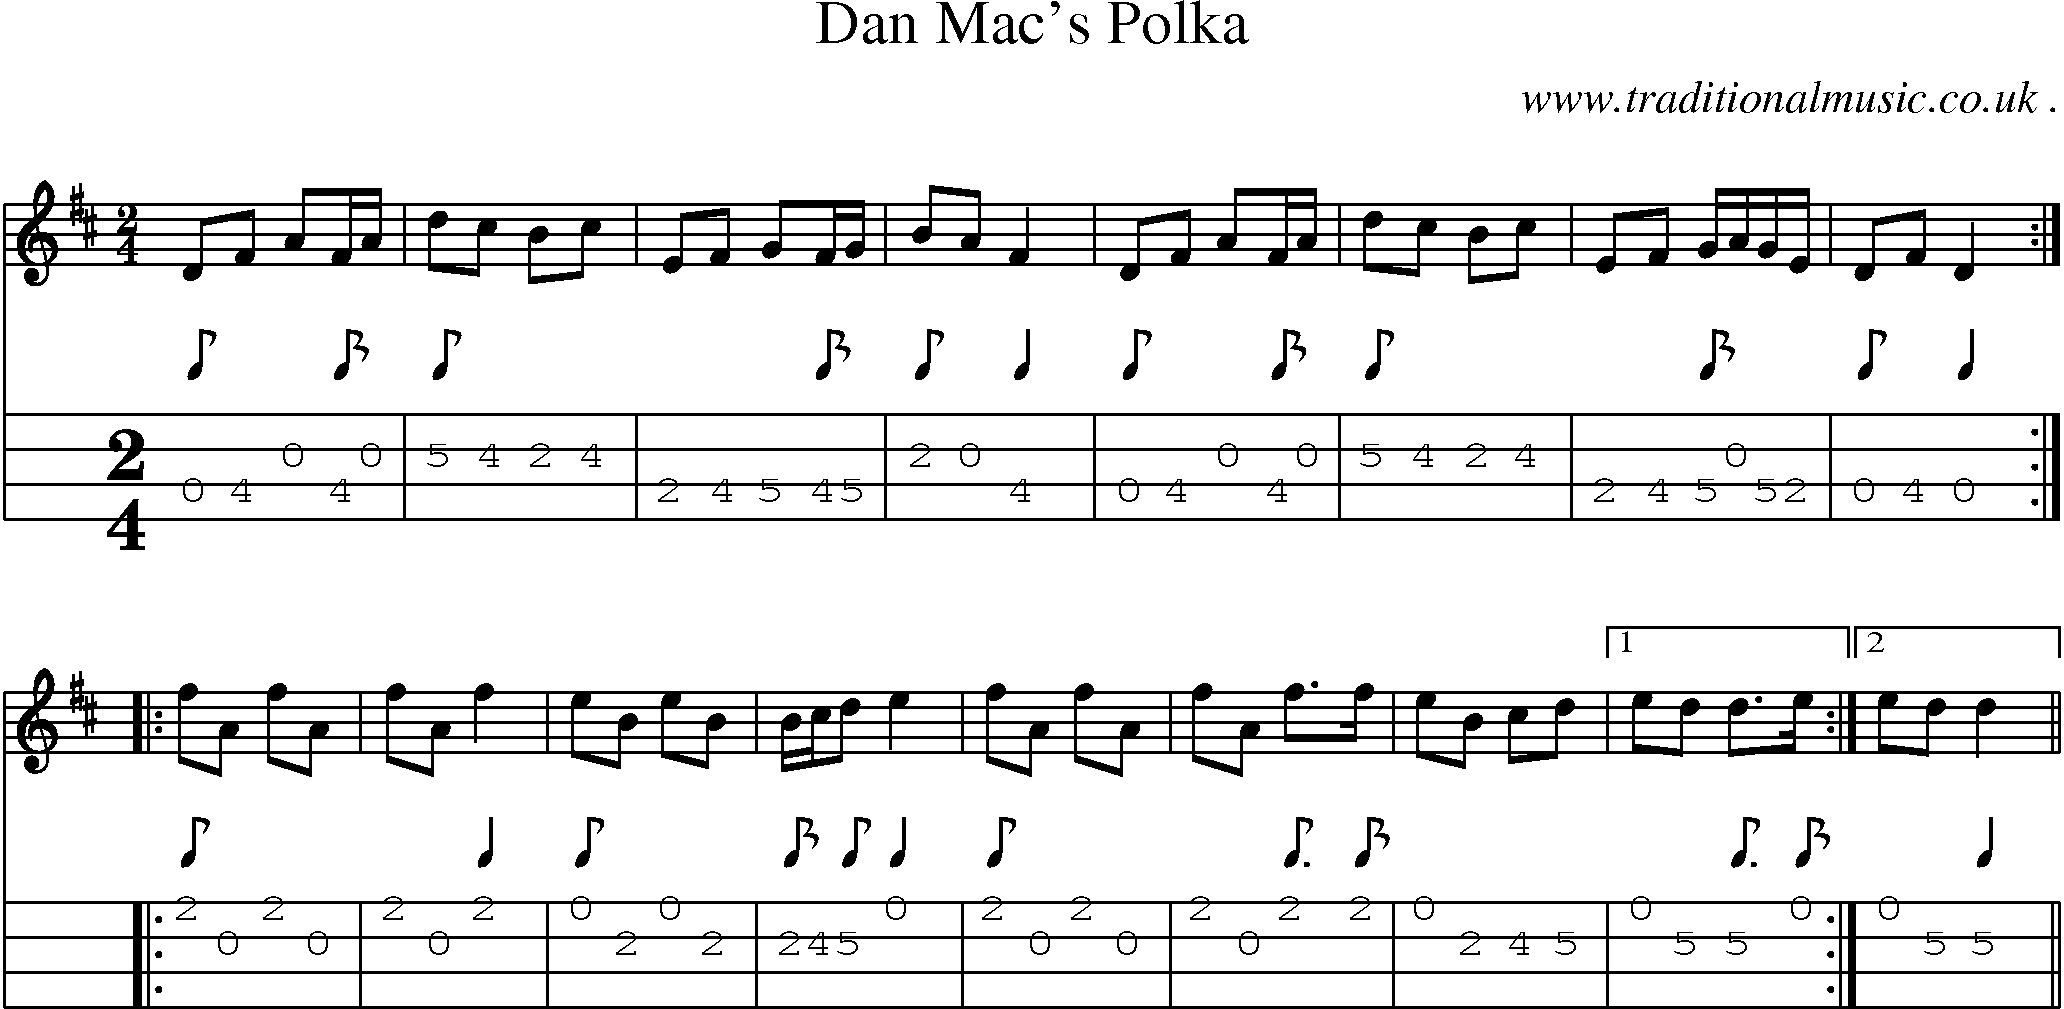 Sheet-Music and Mandolin Tabs for Dan Macs Polka